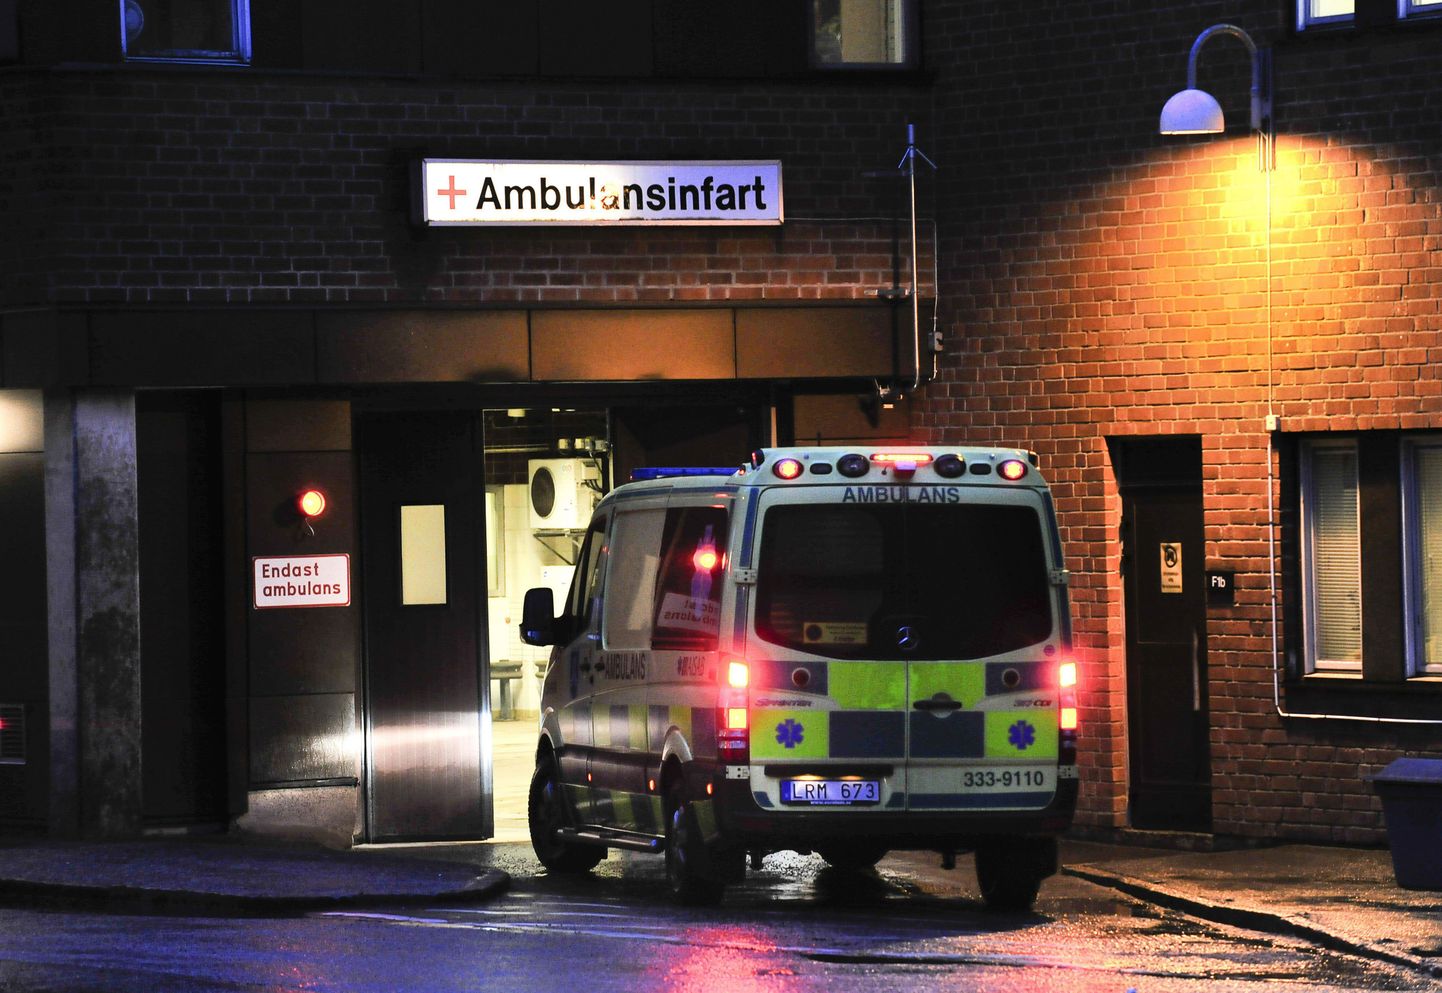 Patsient tulistas Stockholmis parameedikuid